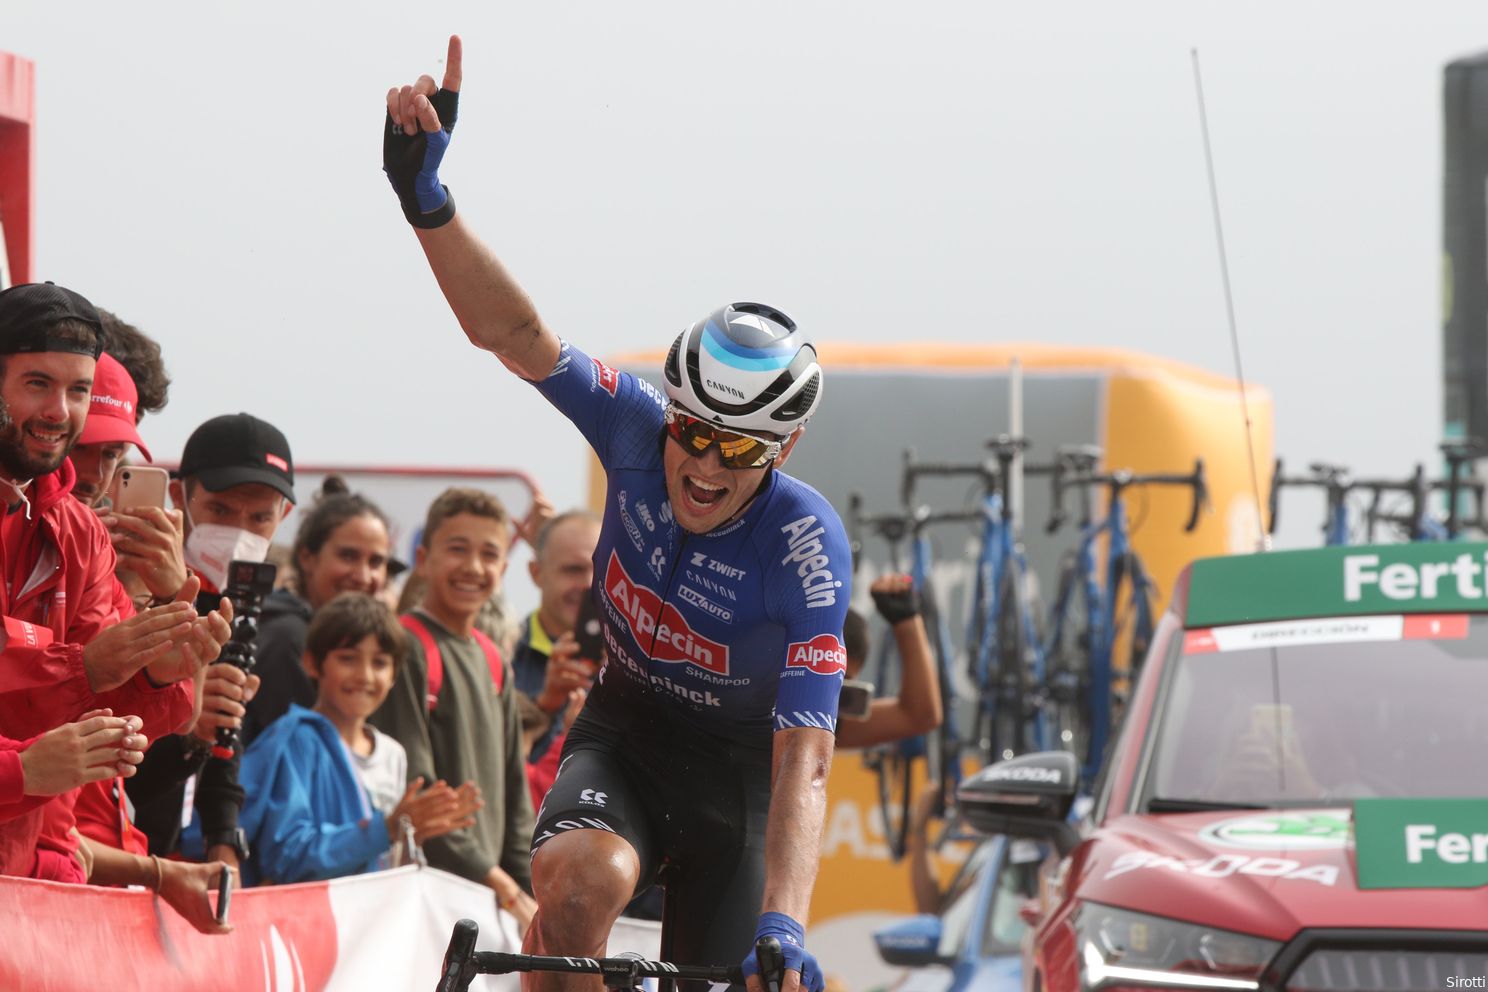 Fine has won the Vuelta twice.